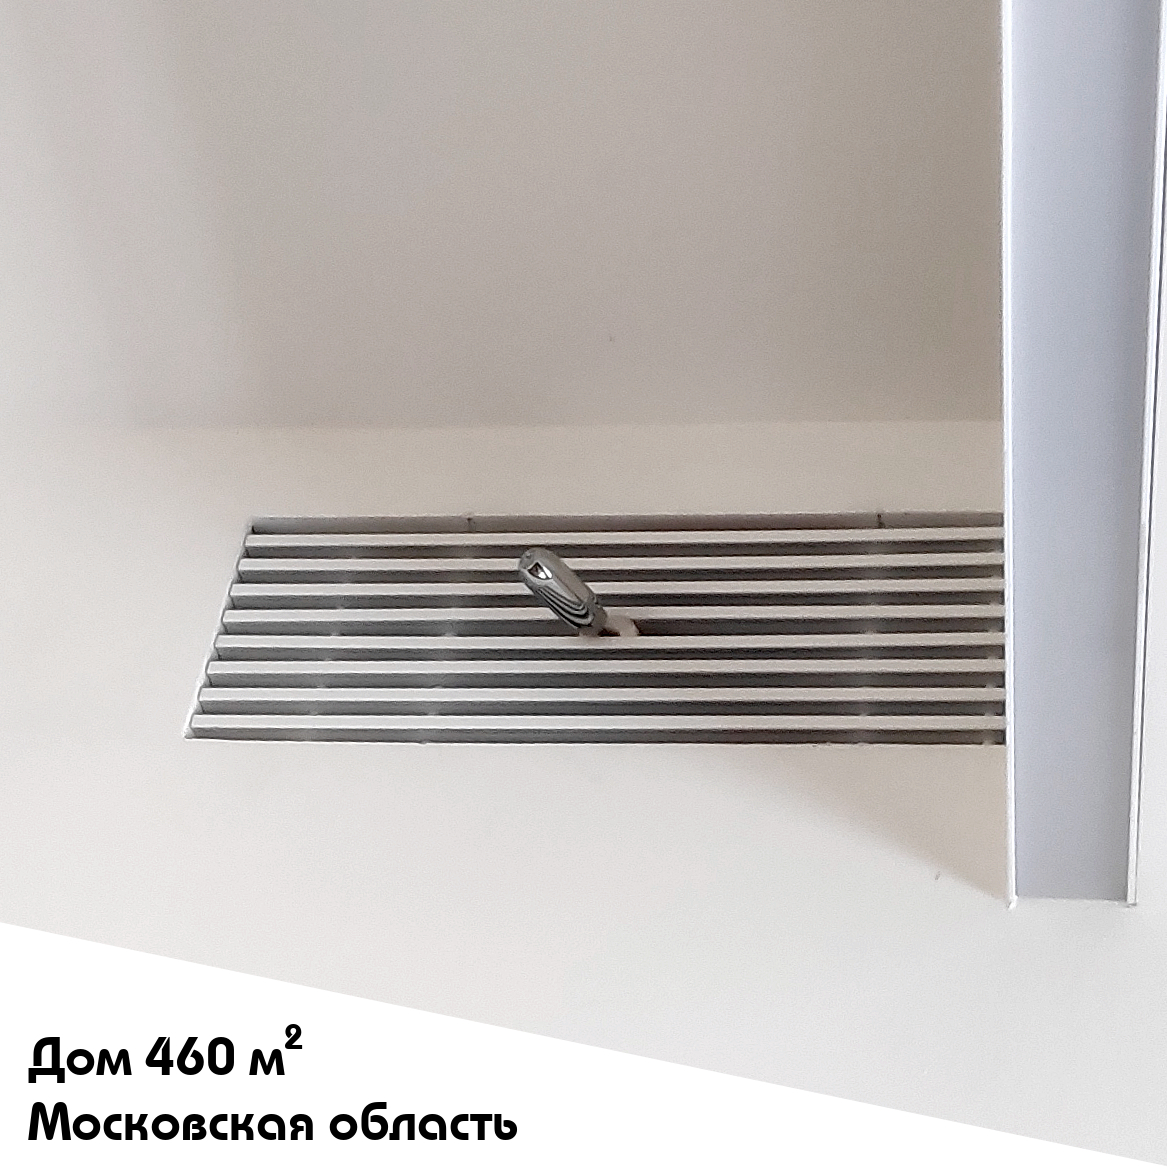 Выполненный объект. Система увлажнения для частного дома 460 м2 в Московской области